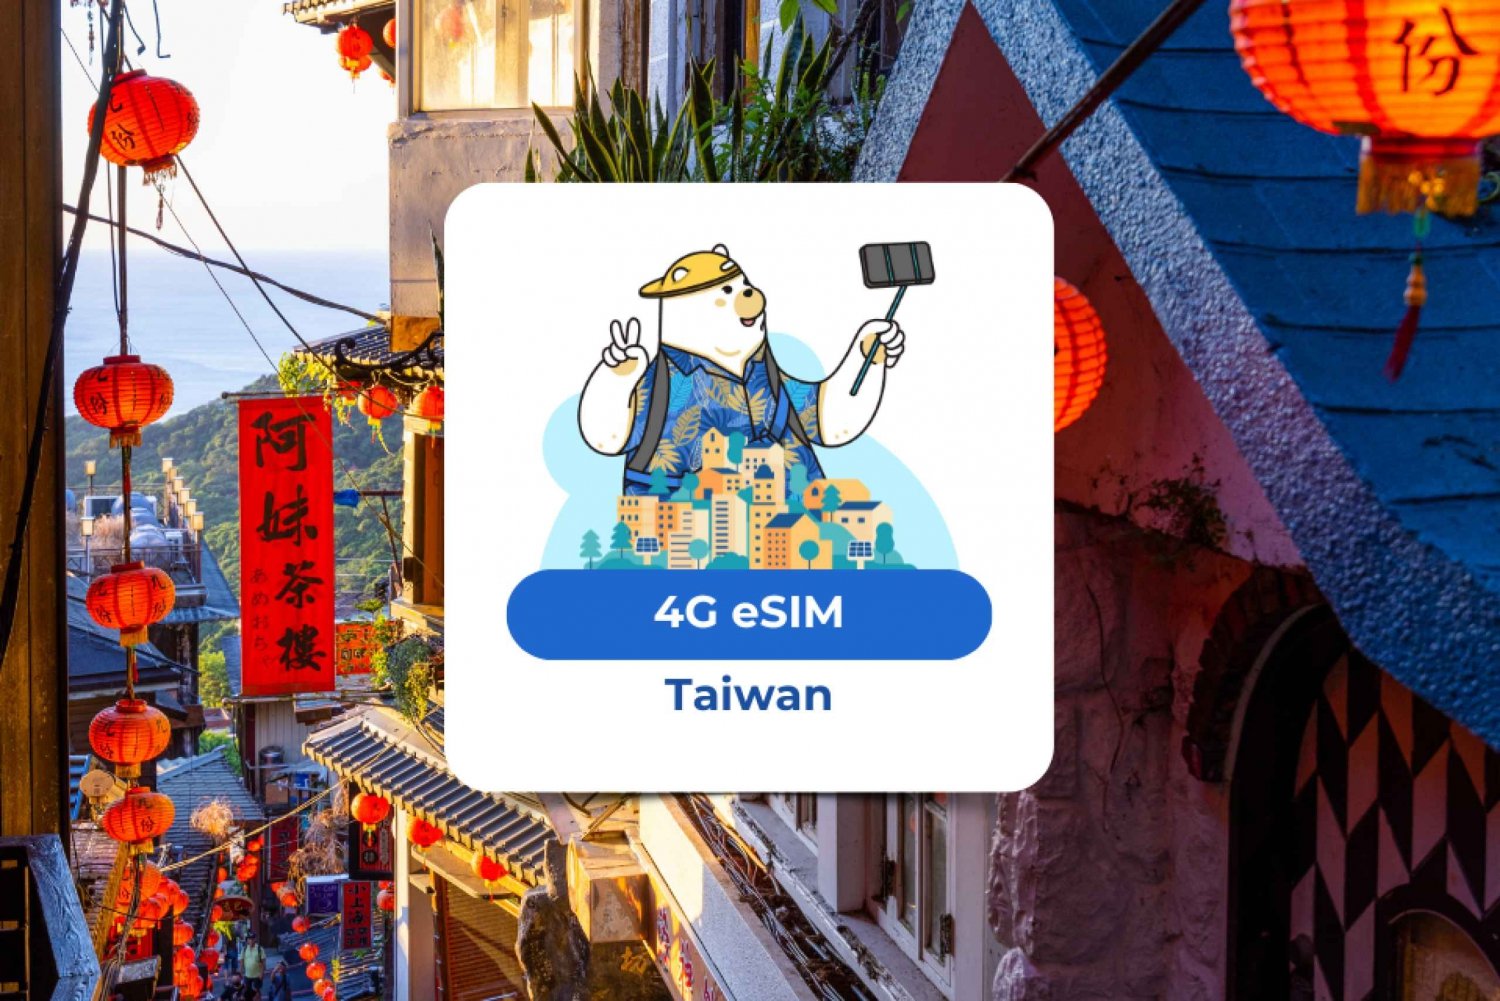 Taiwan: eSIM Mobiel Data Plan